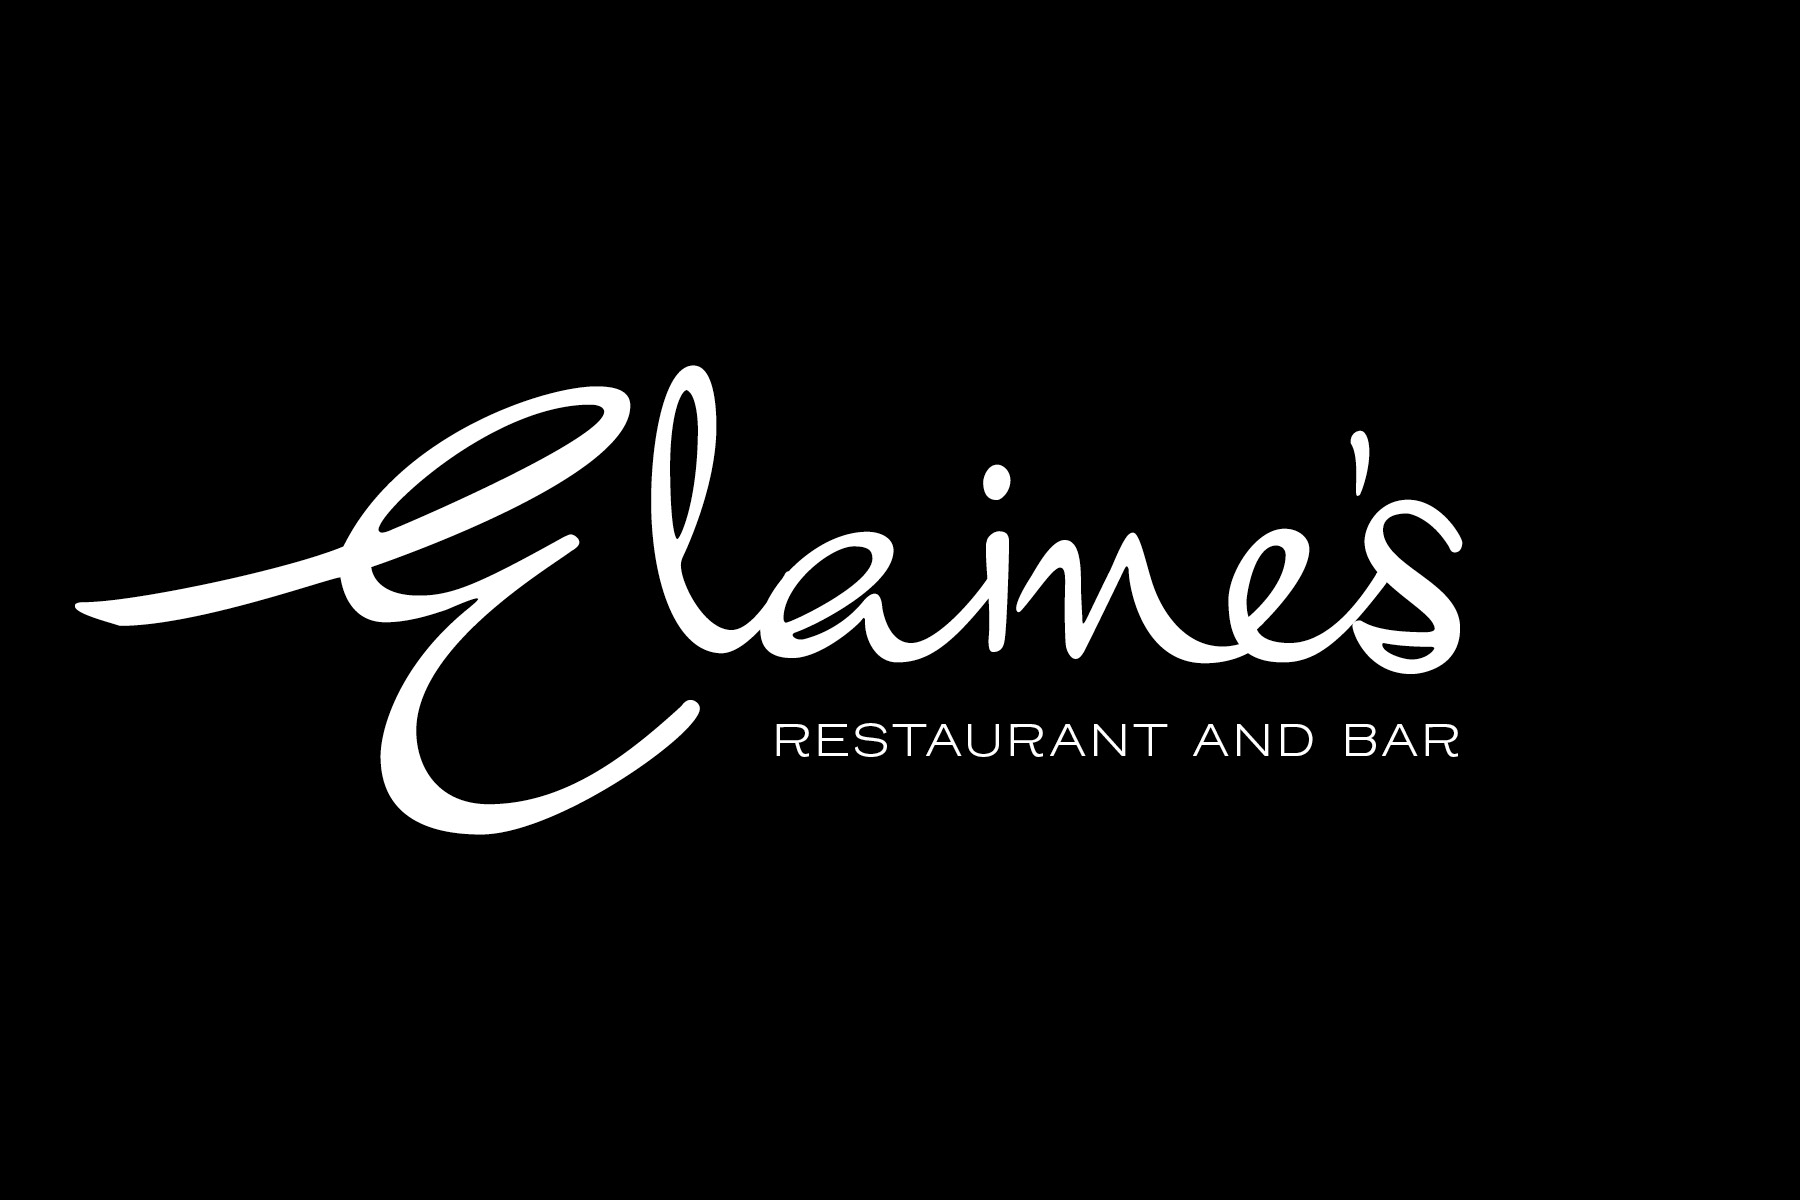 Elaine's Restaurant logo black and white